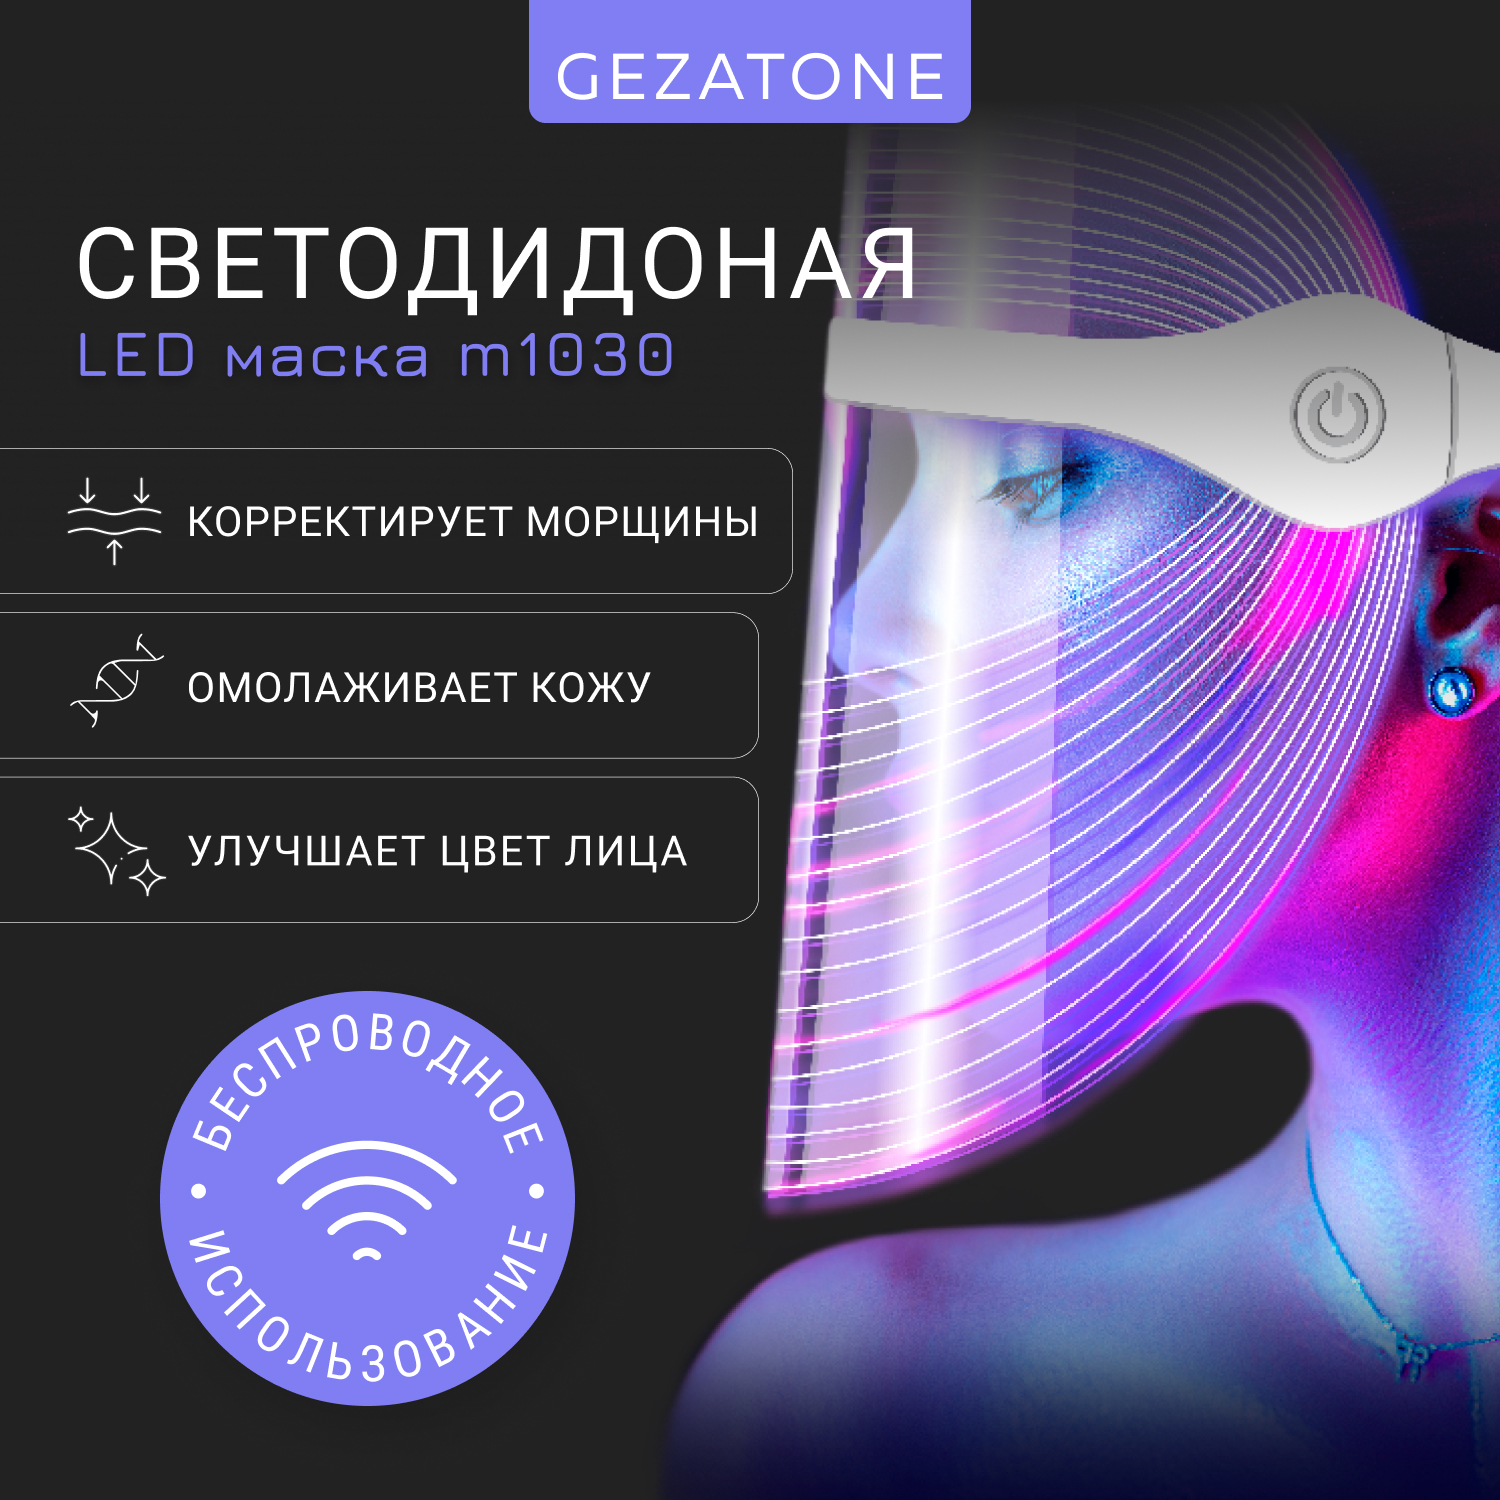 Светодиодная LED маска для омоложения кожи лица и шеи с 7 цветами Gezatone m1030 светодиодная фигура телефонная будка со снеговиком пластик 12х5